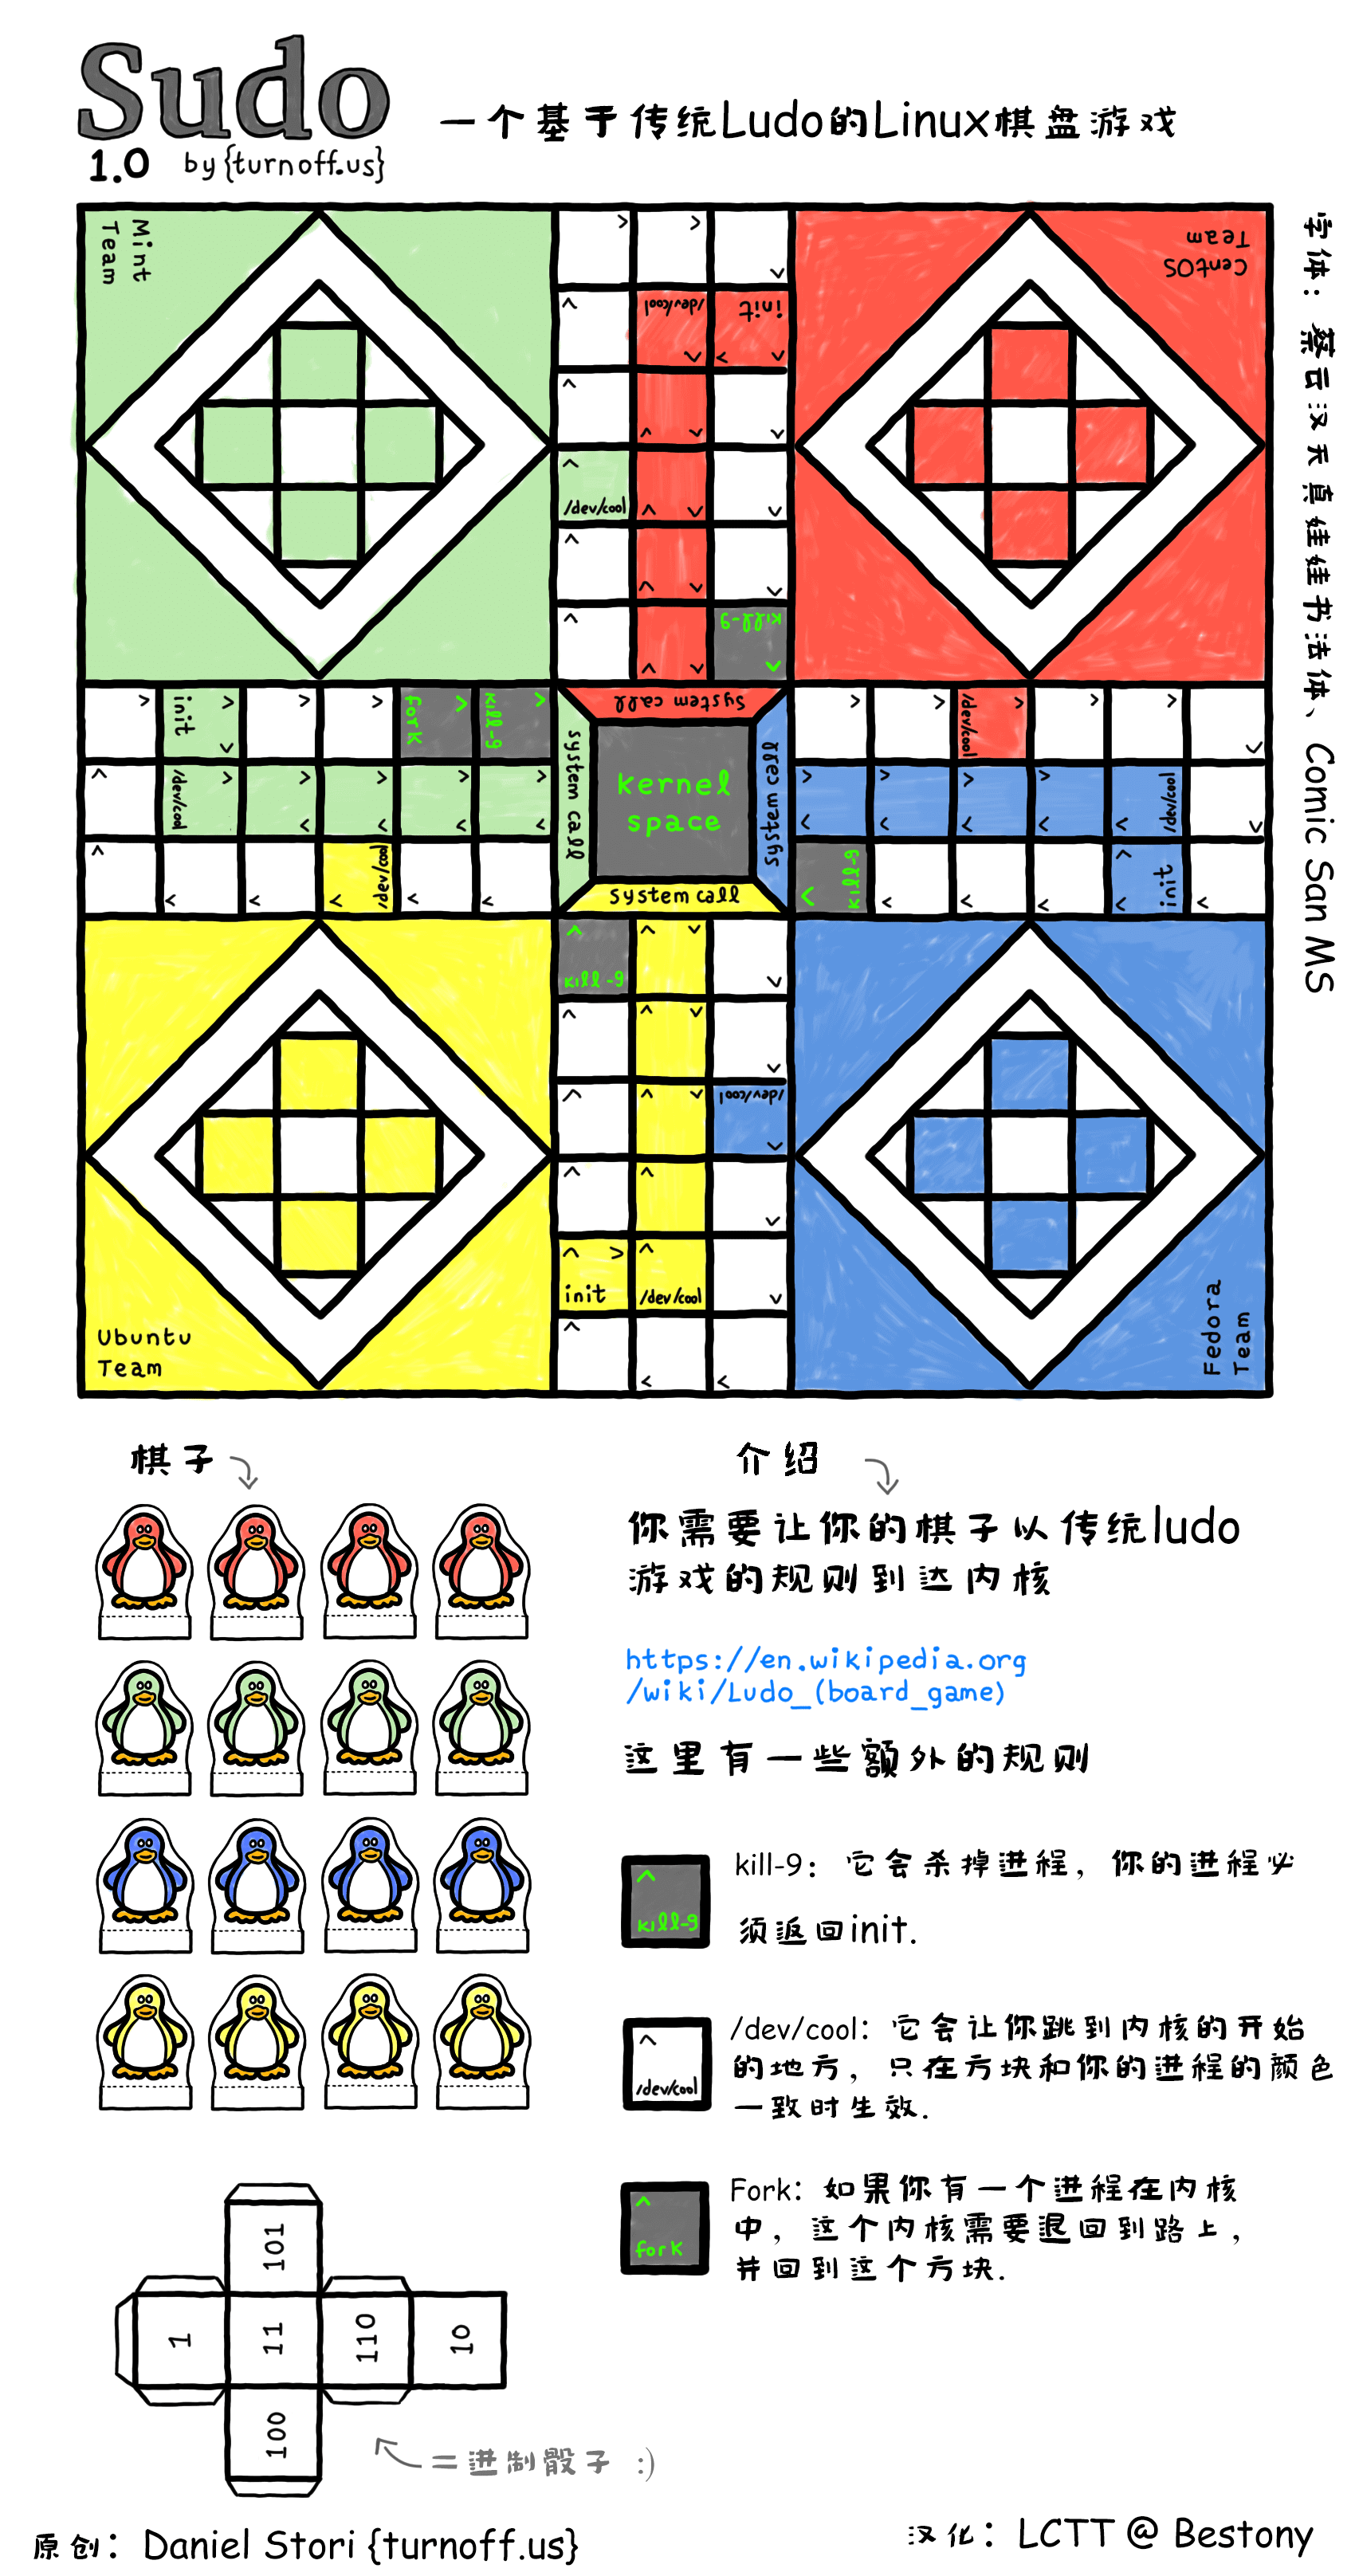 sudo board game